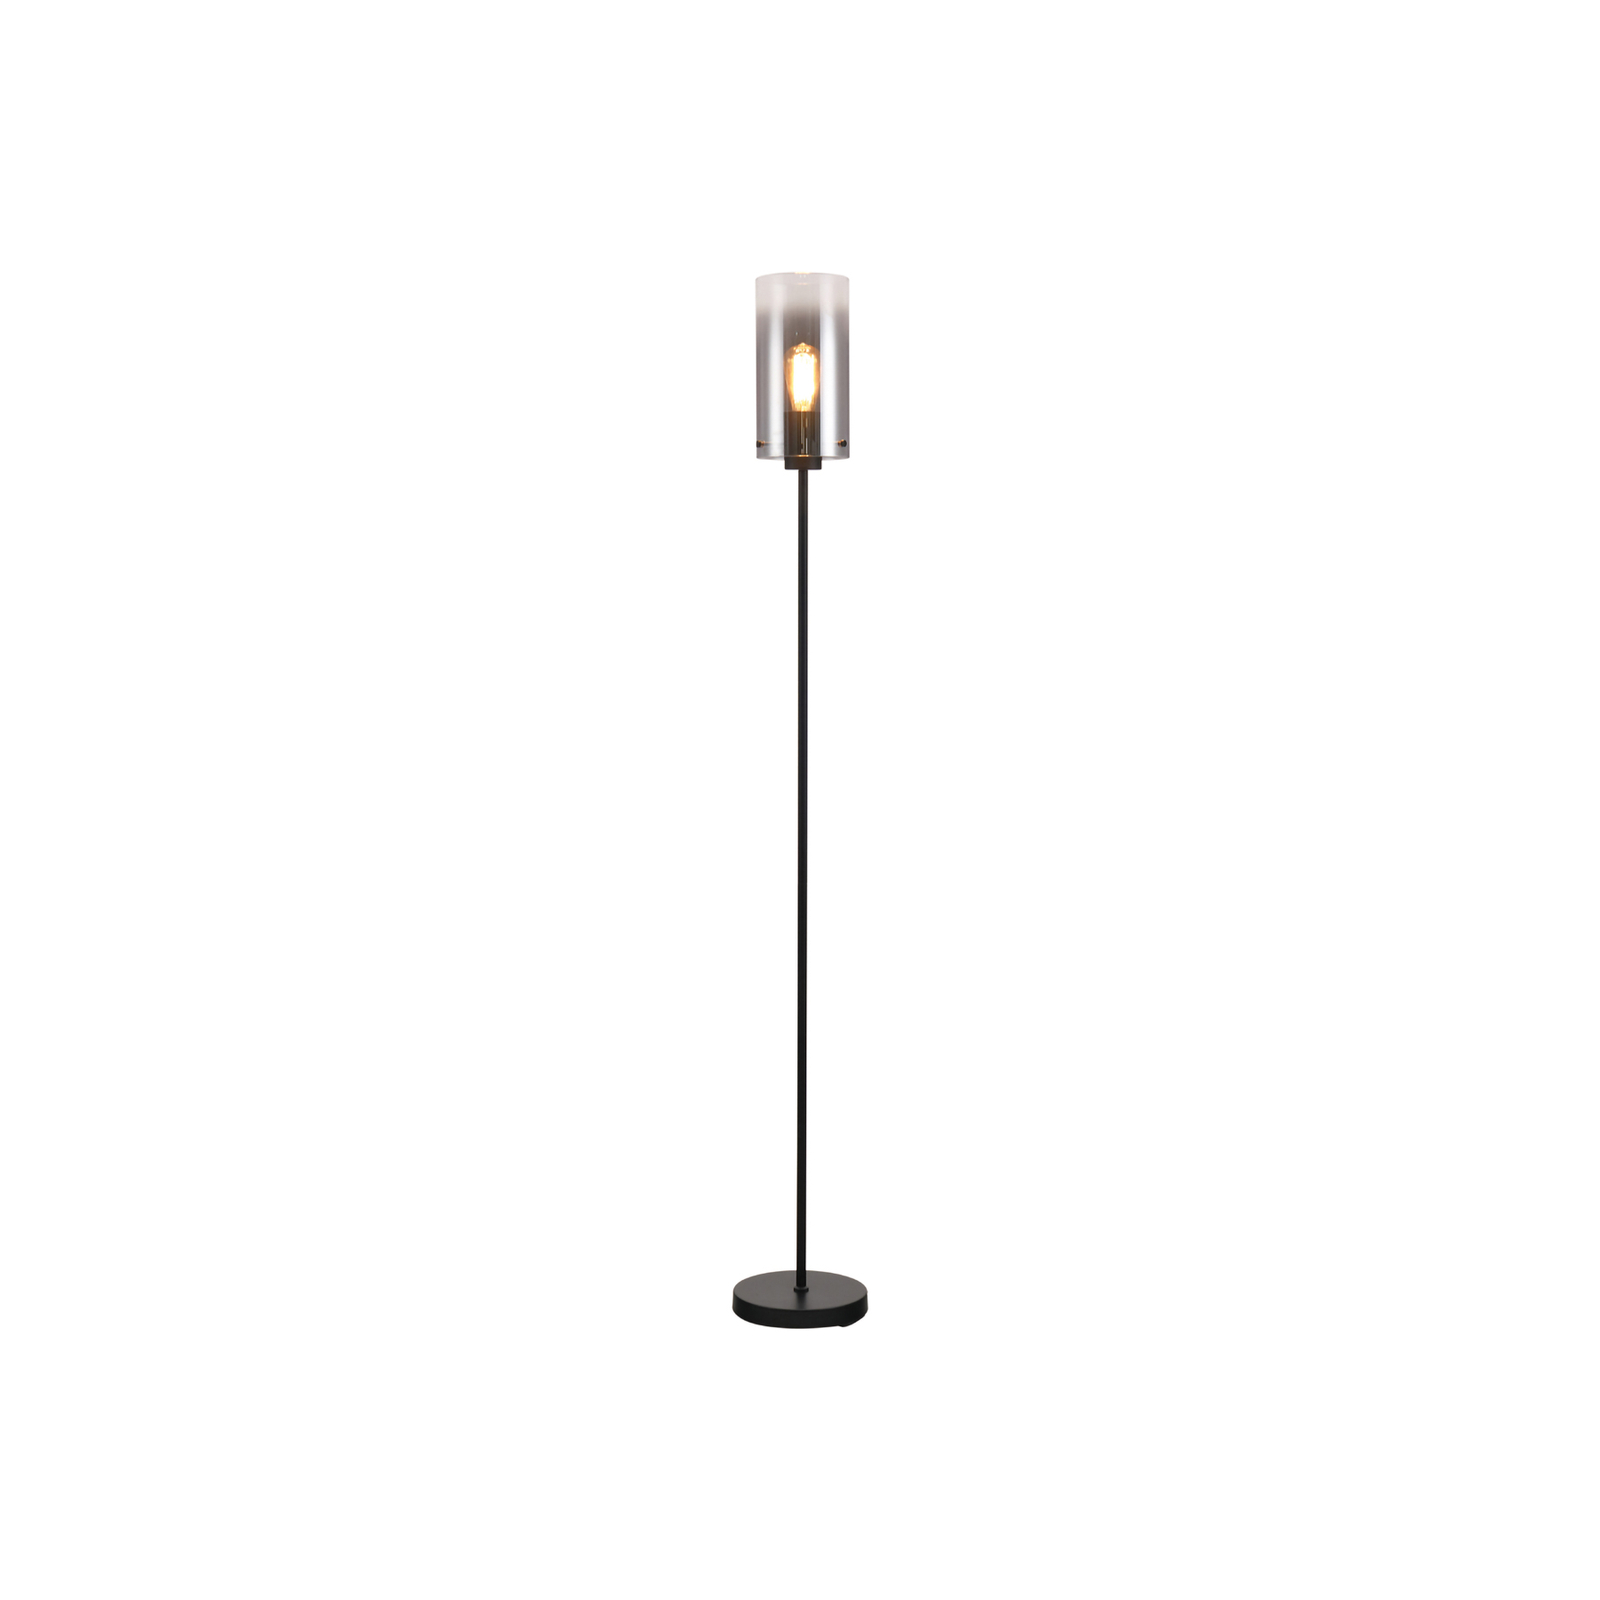 Podna lampa Ventotto, crna/dim, visina 165 cm, metal/staklo